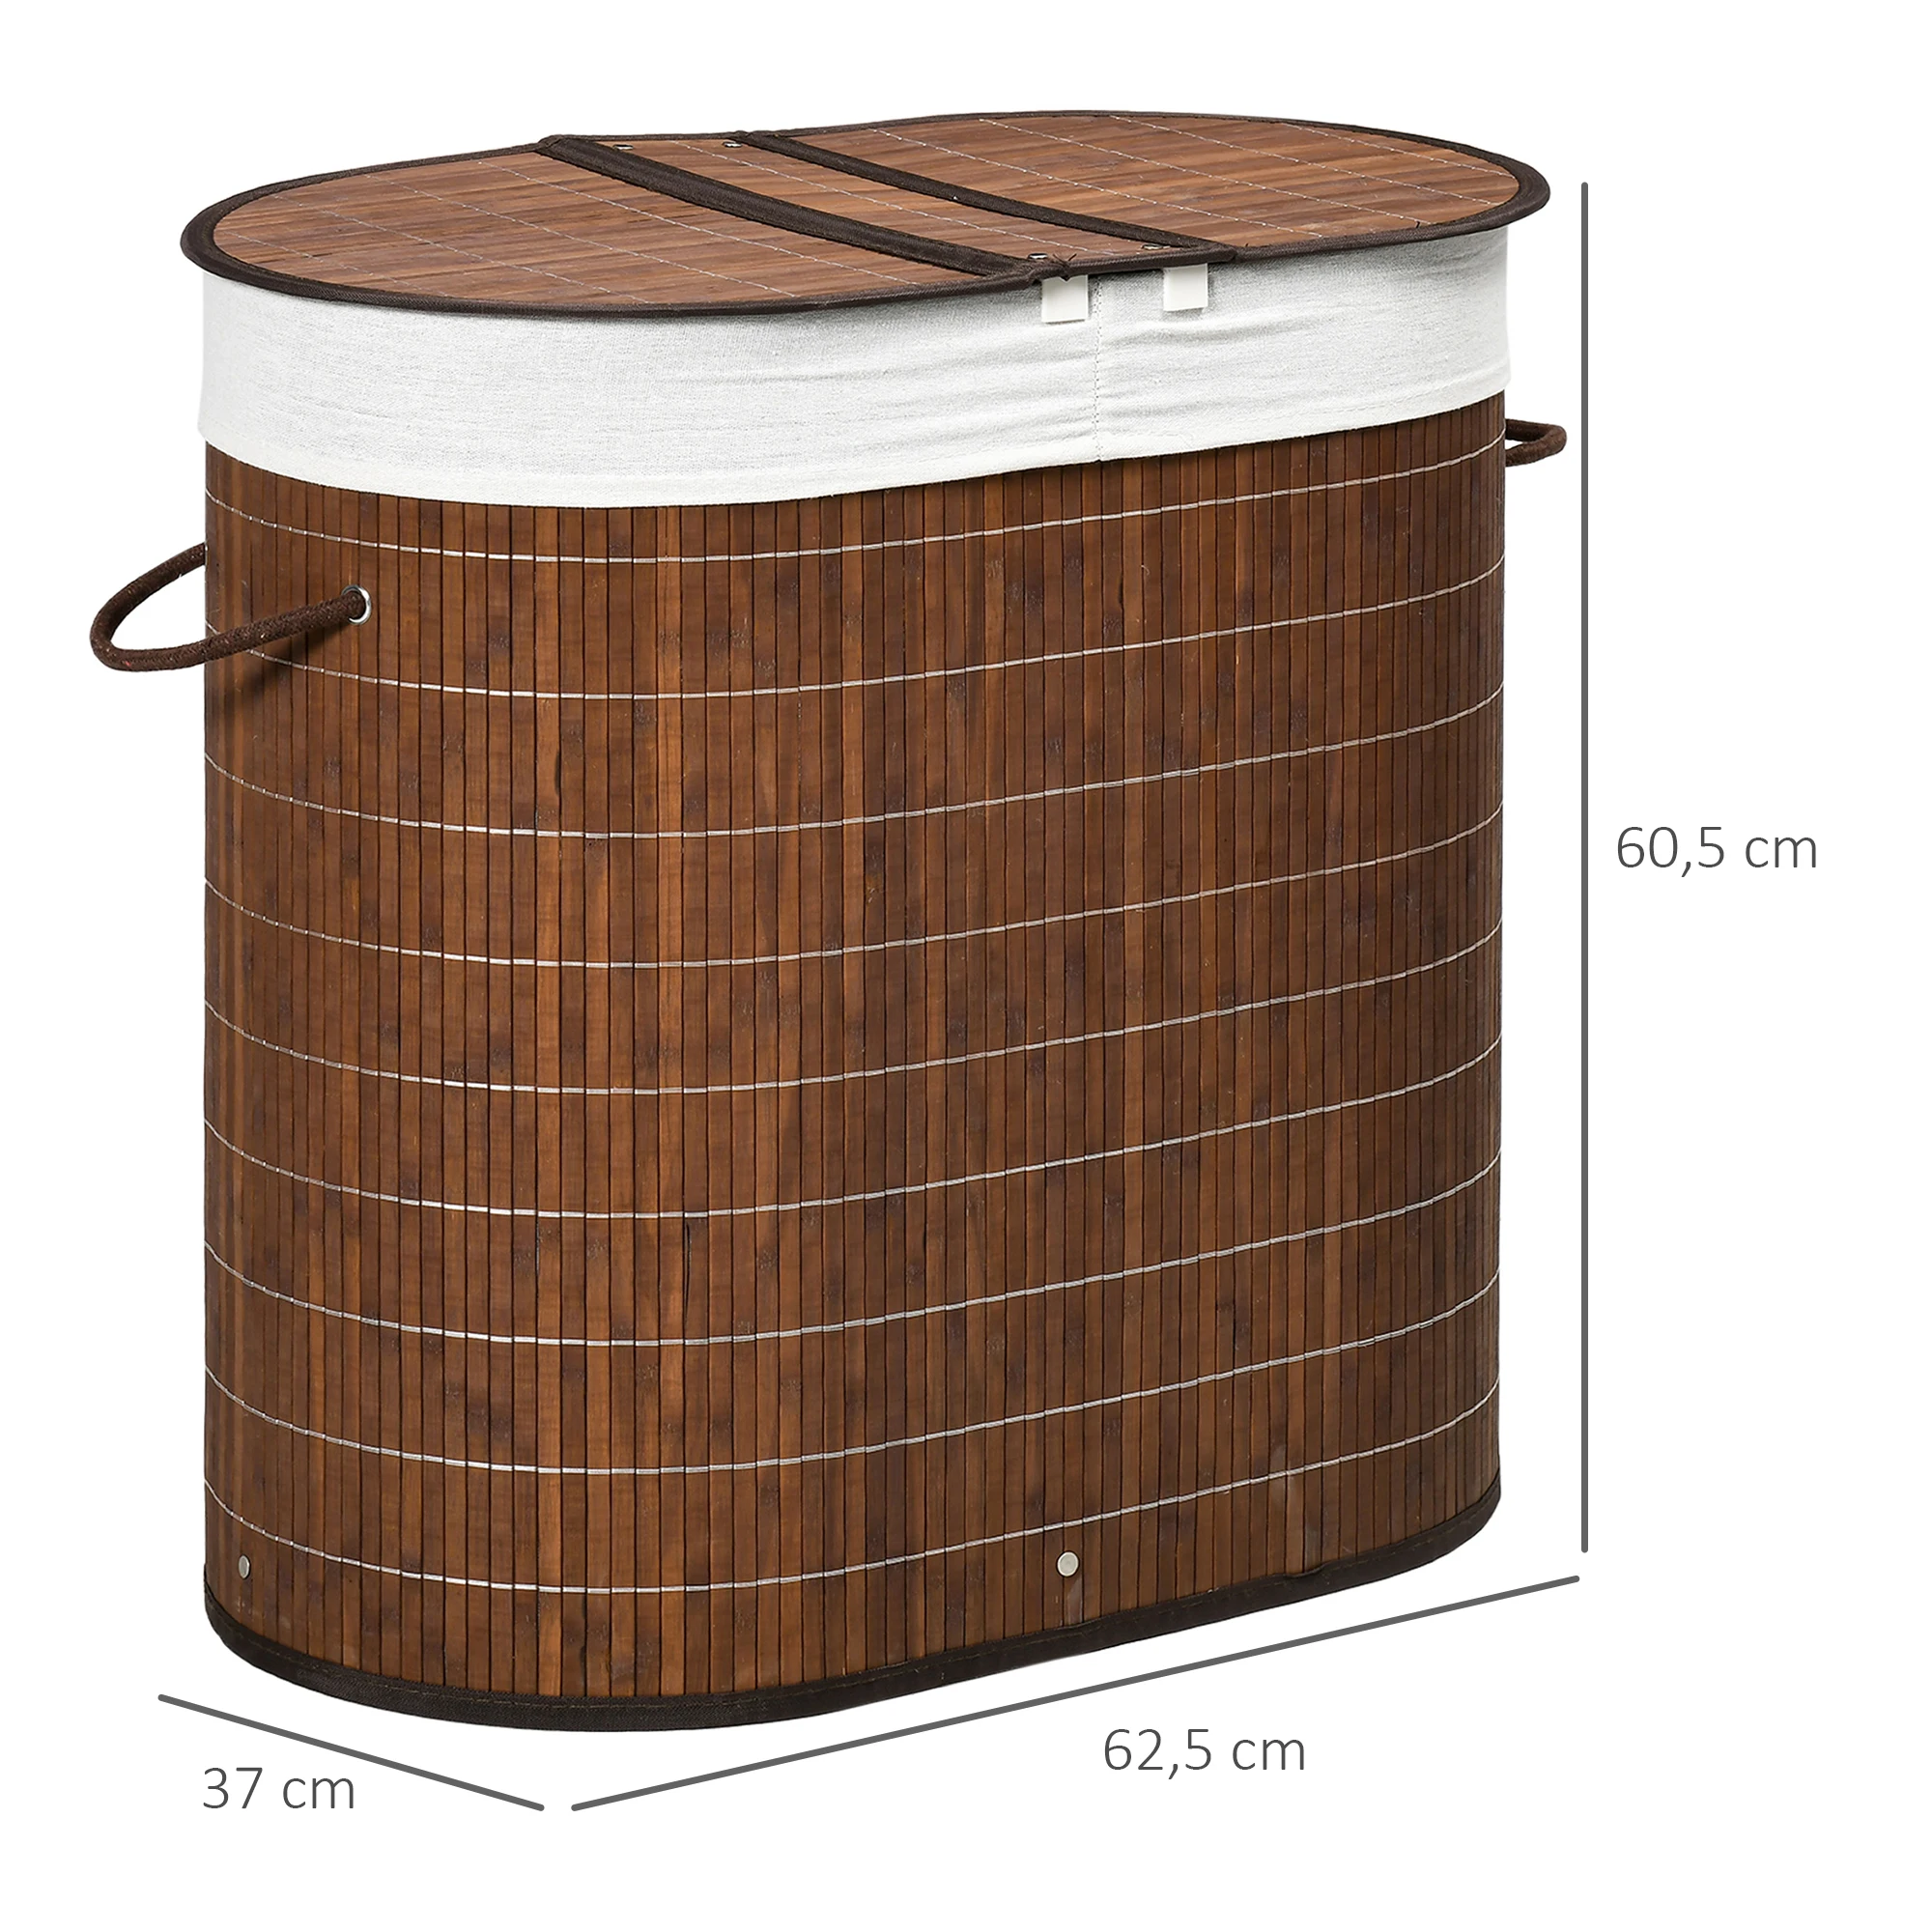 HOMCOM Bamboo Dirty Clothes Basket capacità 100L cesto portabiancheria con  Flip e borsa a 2 scomparti rimovibile 62,5x37x60,5 cm marrone